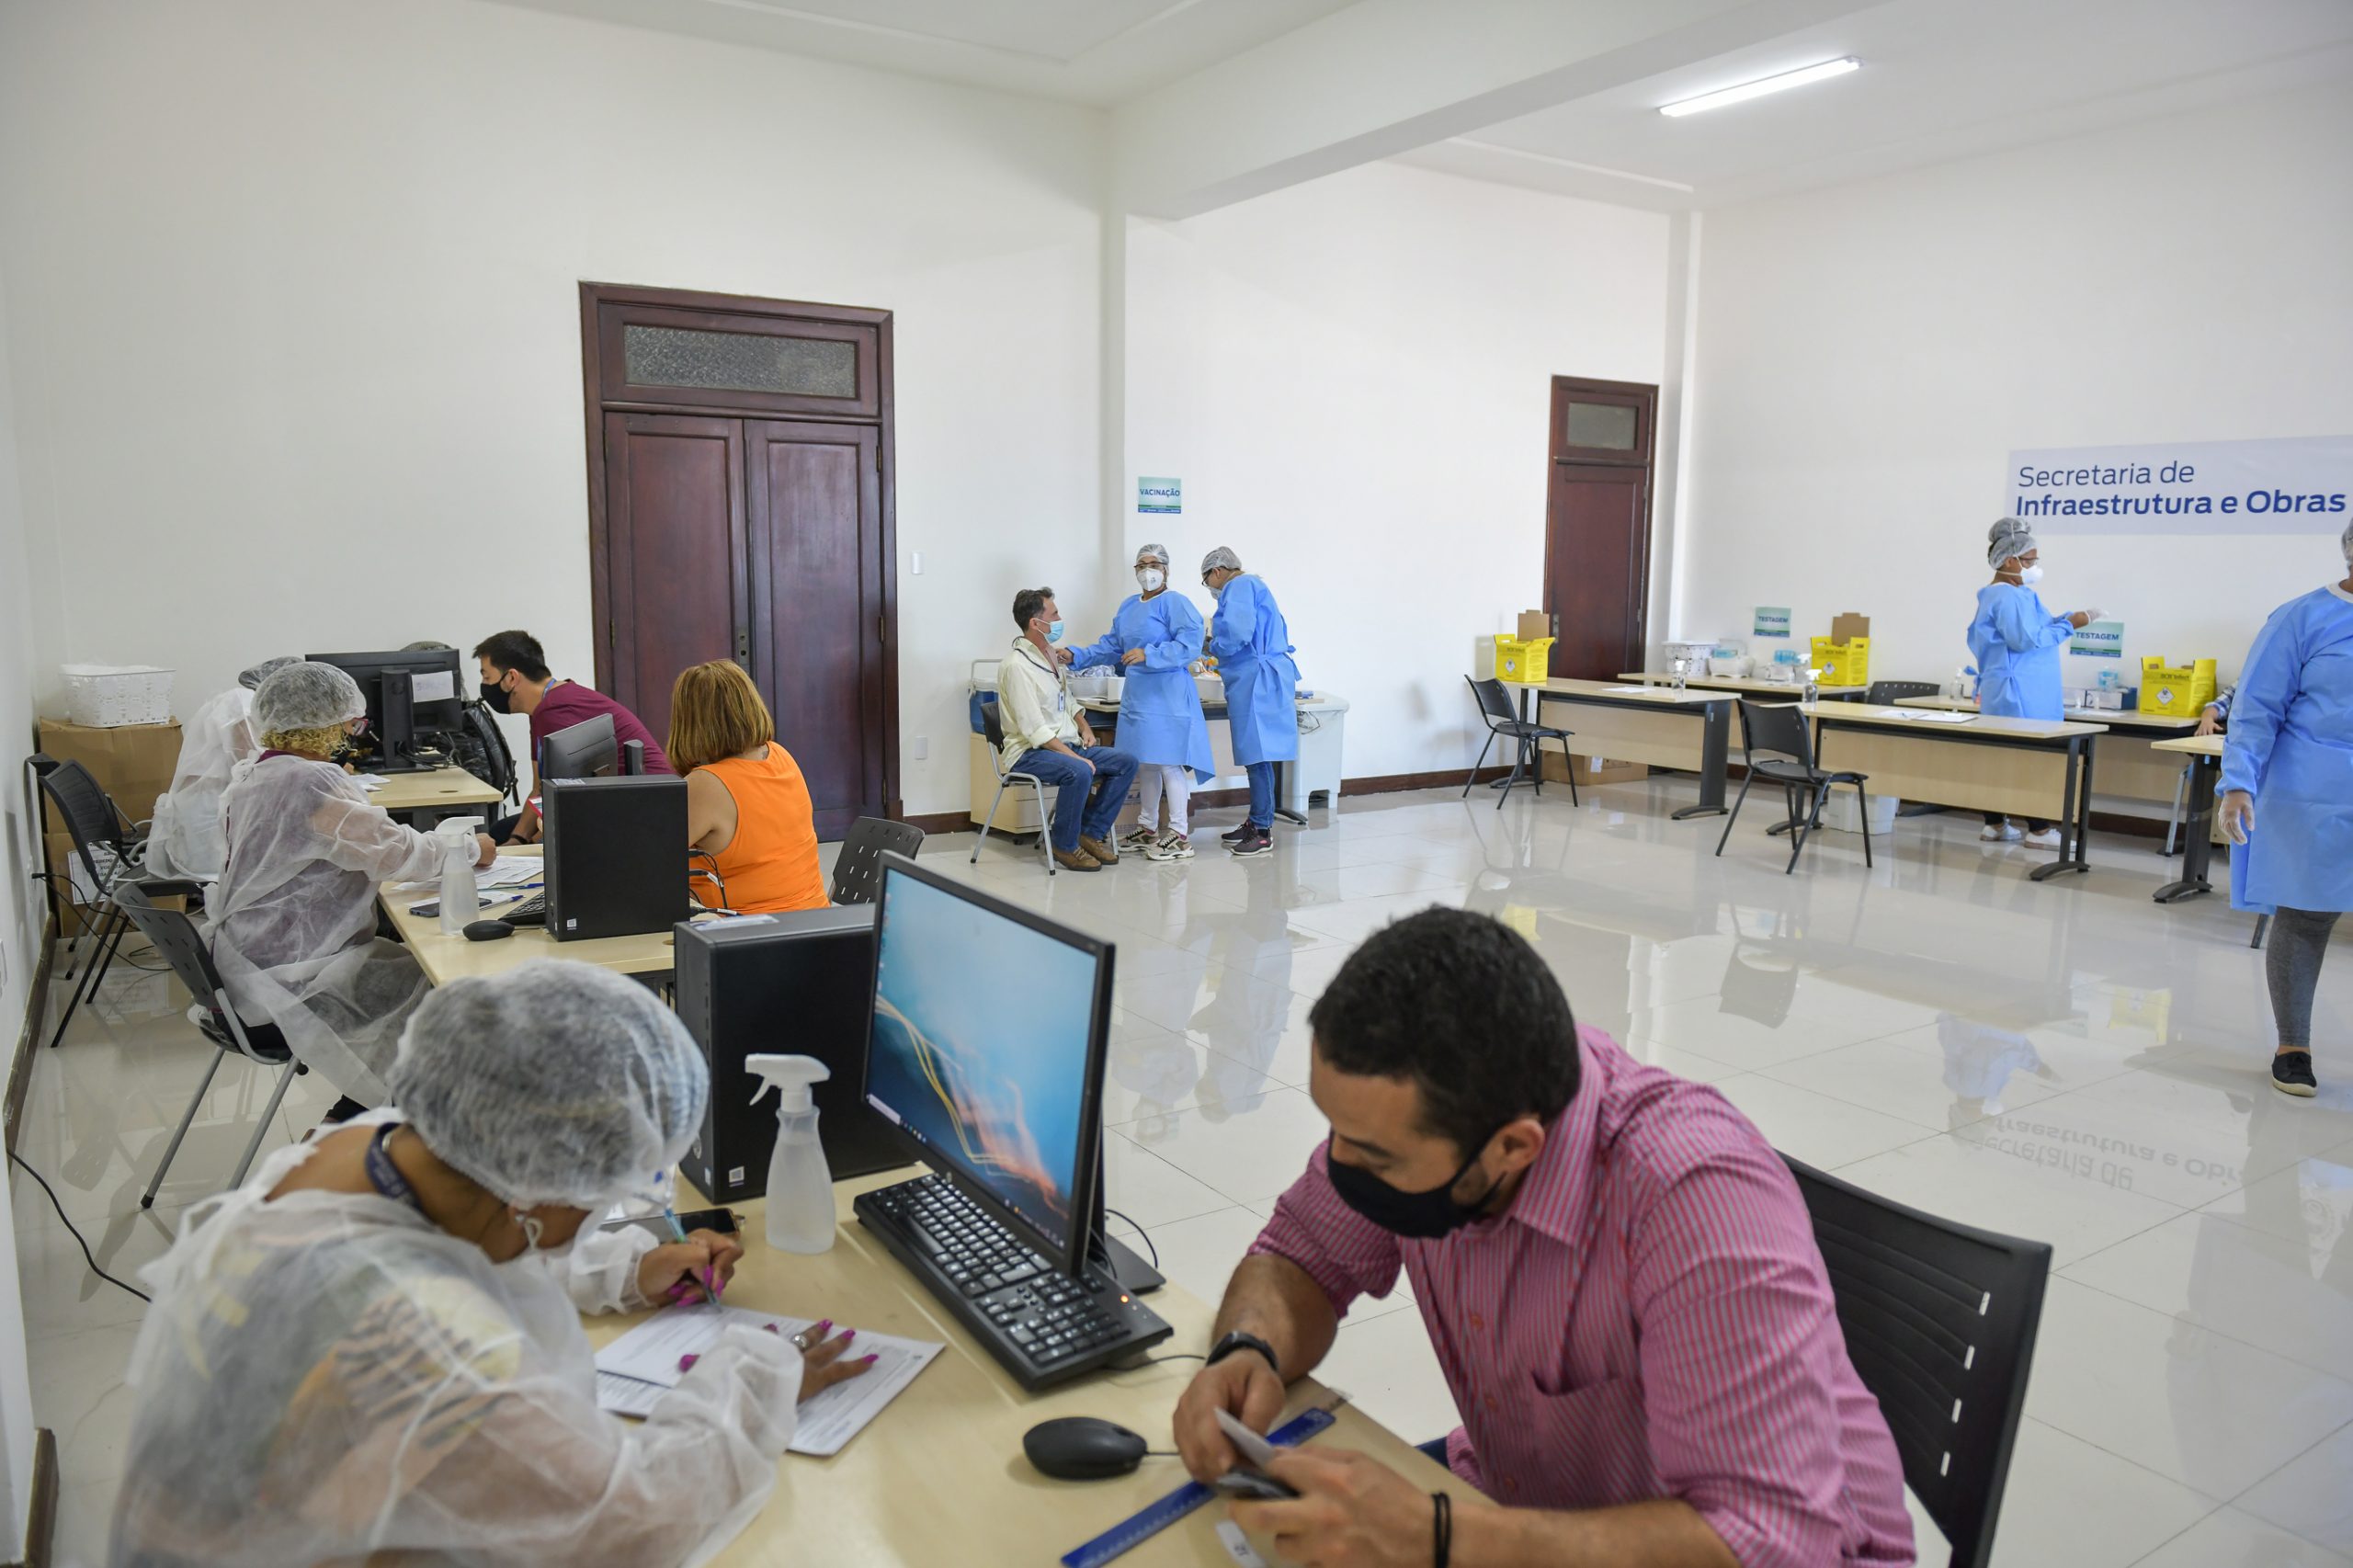 Campanha de testagem e vacinação contra a Covid que mobiliza servidores da Secretaria Estadual de Infraestrutura e Obras vai até o dia 25